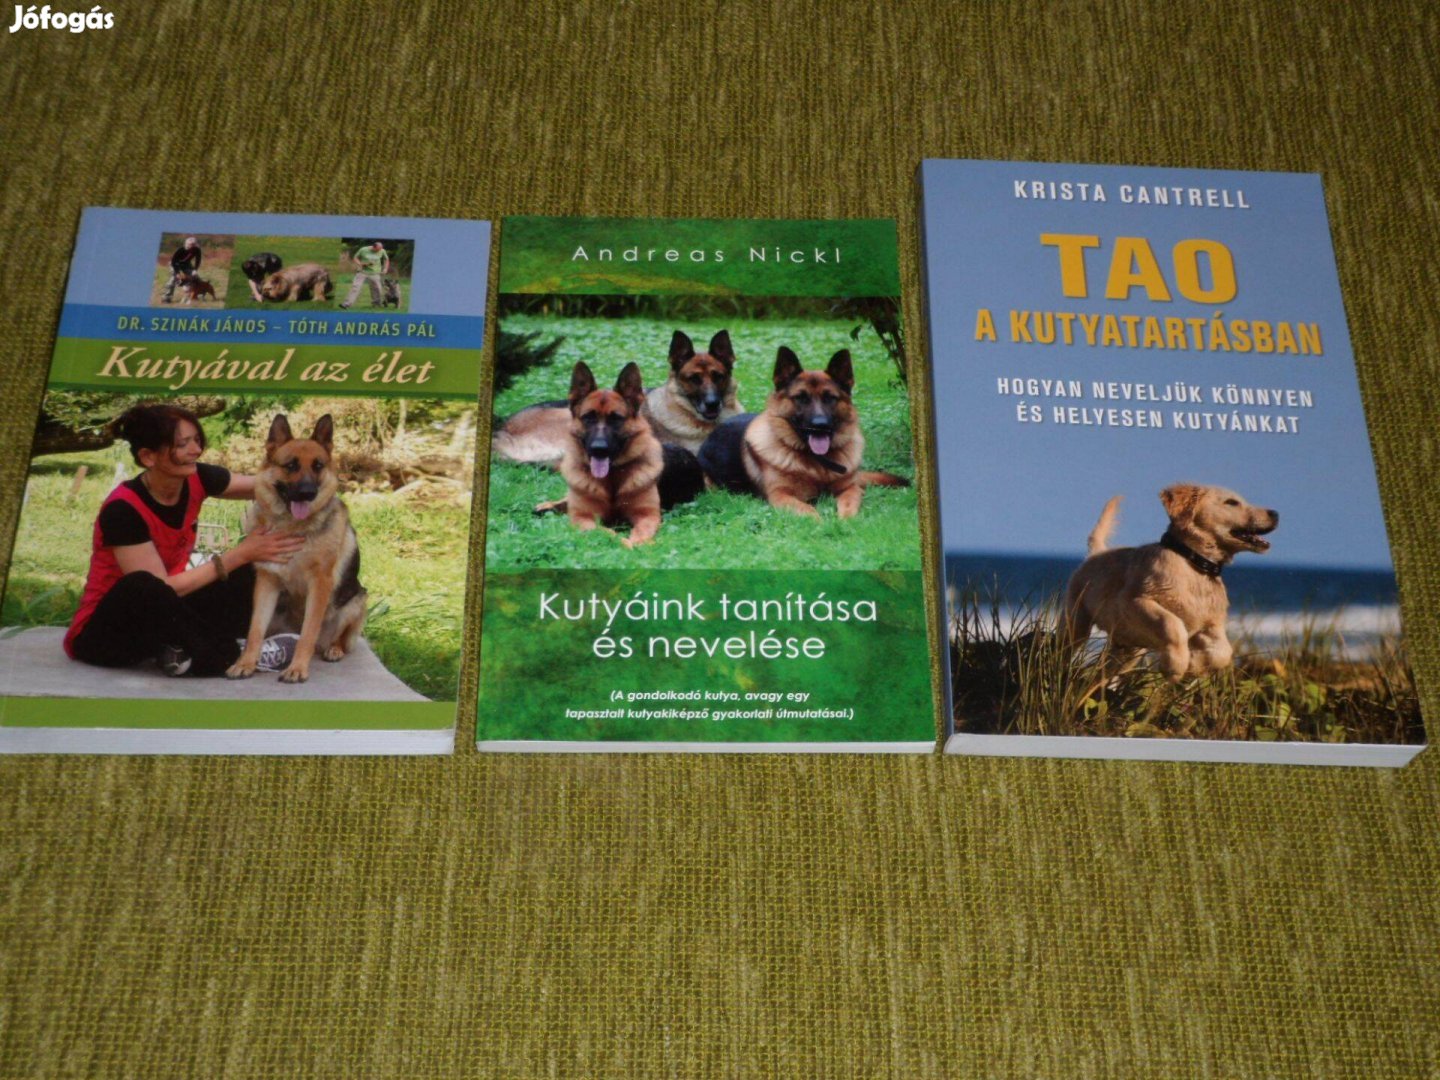 Kutyával az élet + Kutyáink tanítása és nevelése + Tao a kutyatartásba